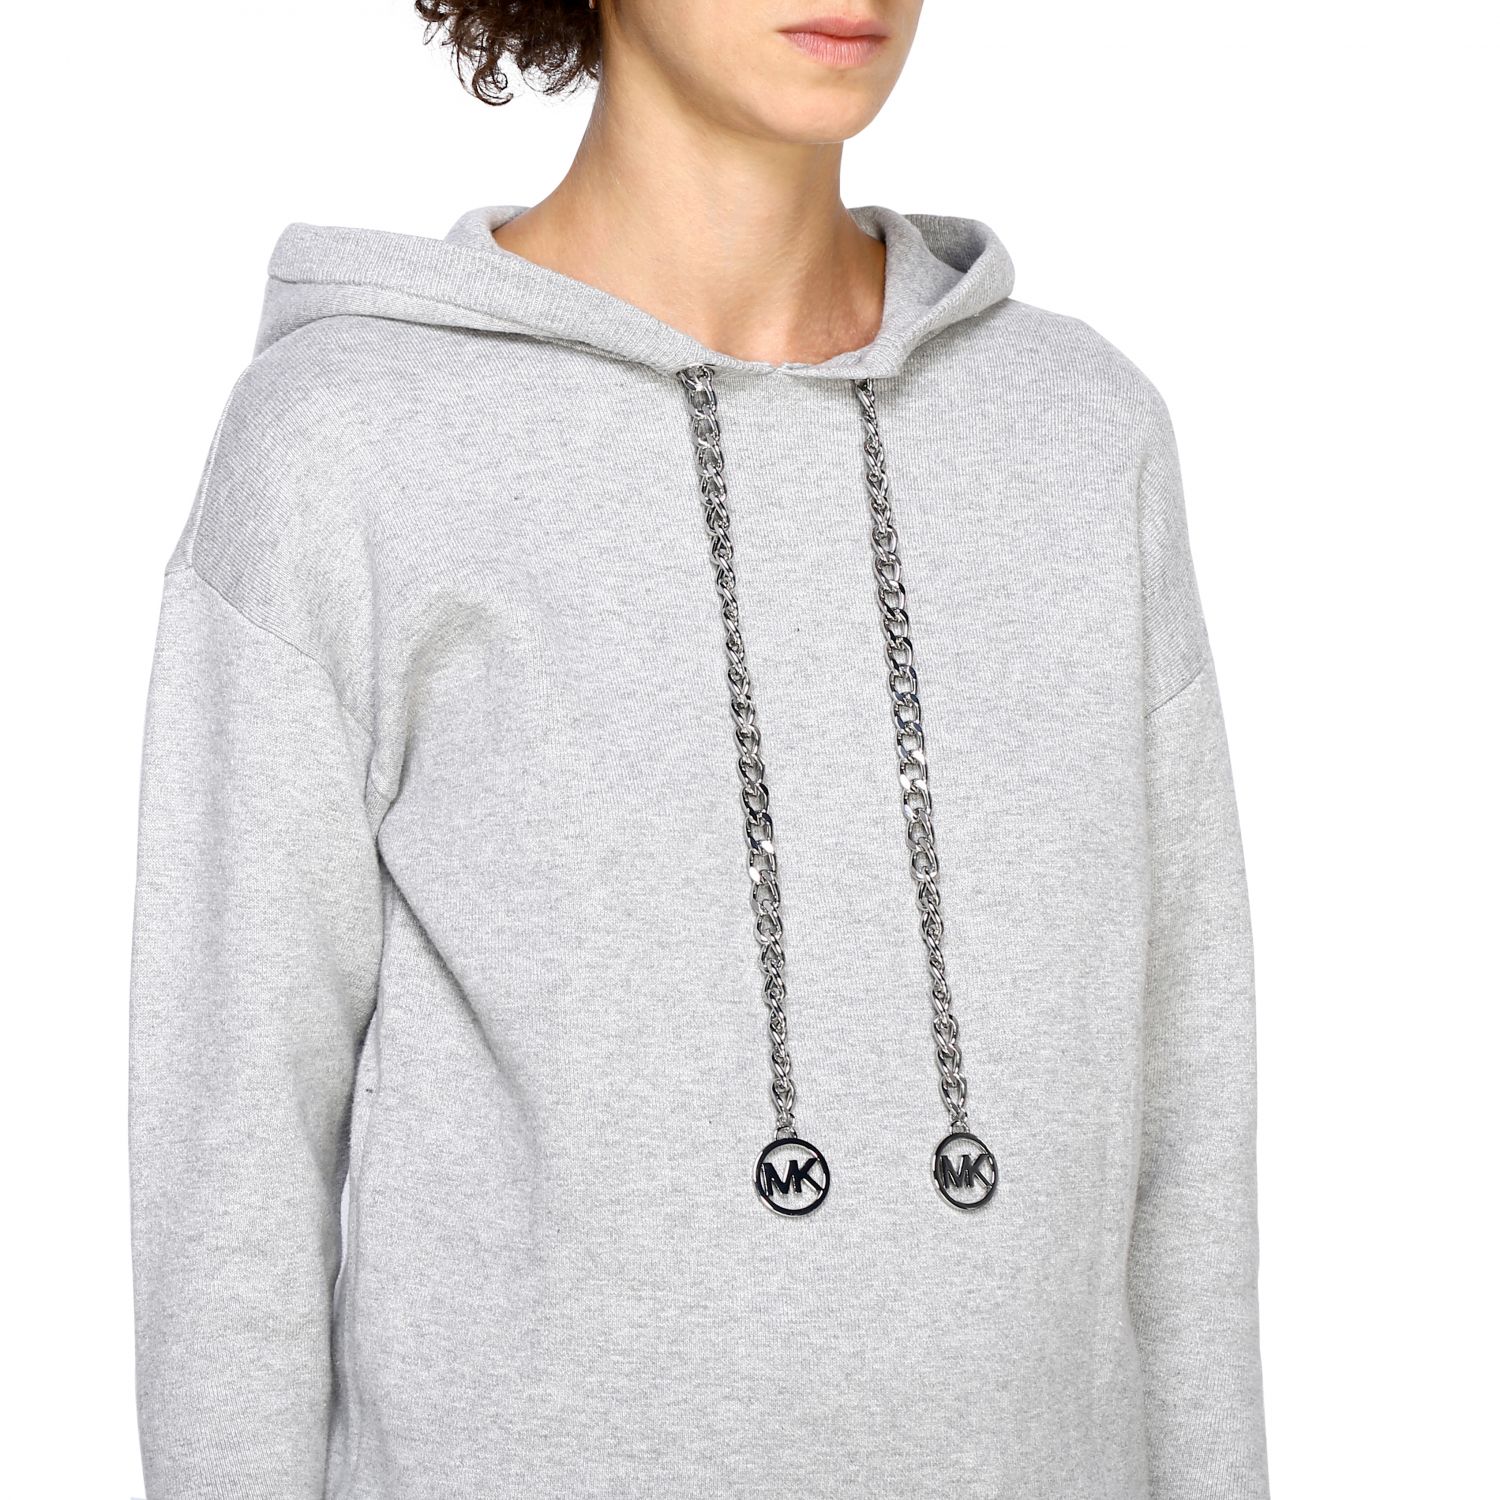 michael kors hoodie grey